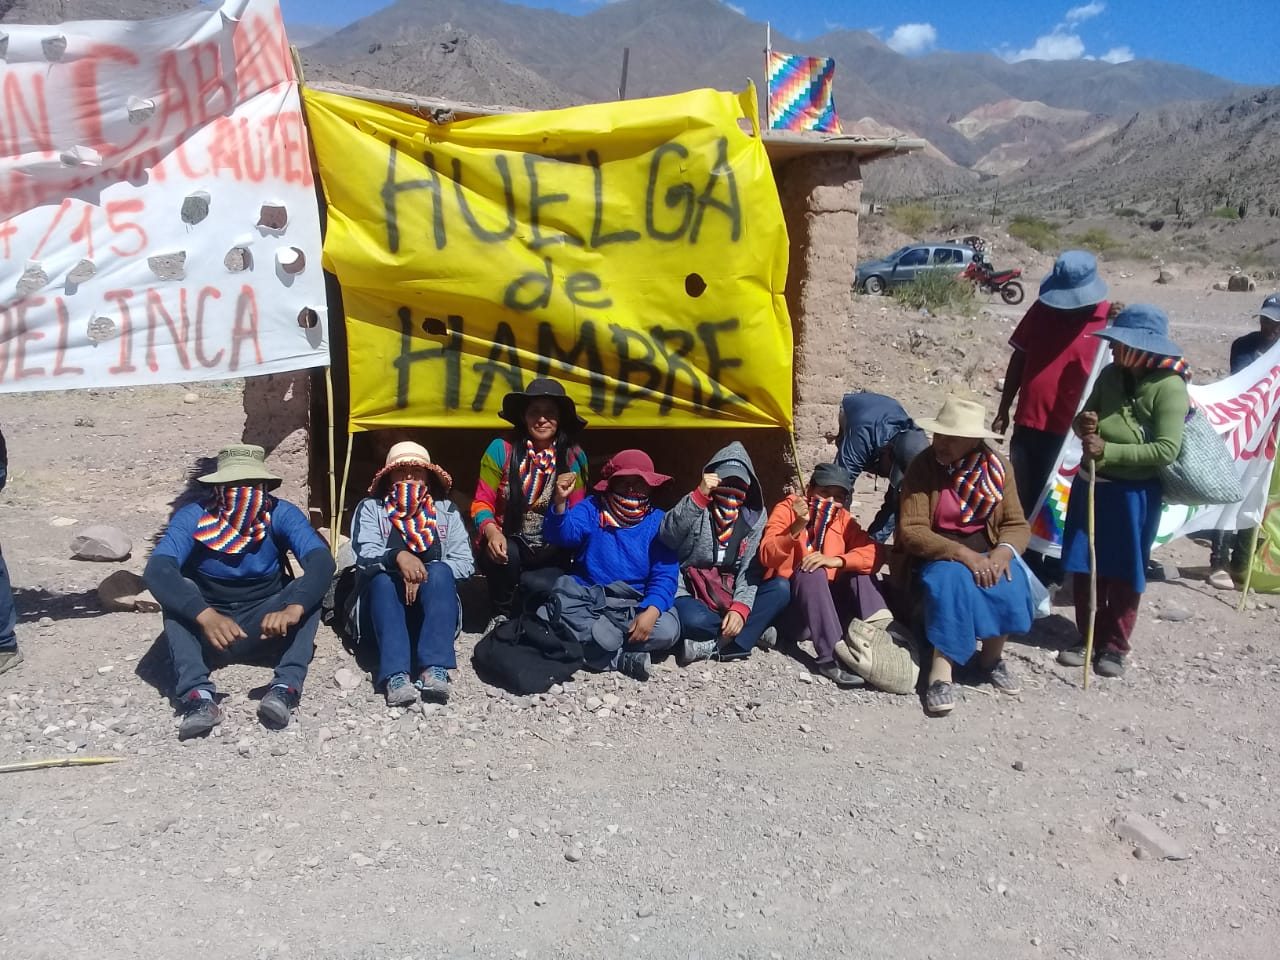 Cueva del Inca: huelga de hambre por el levantamiento de medida judicial